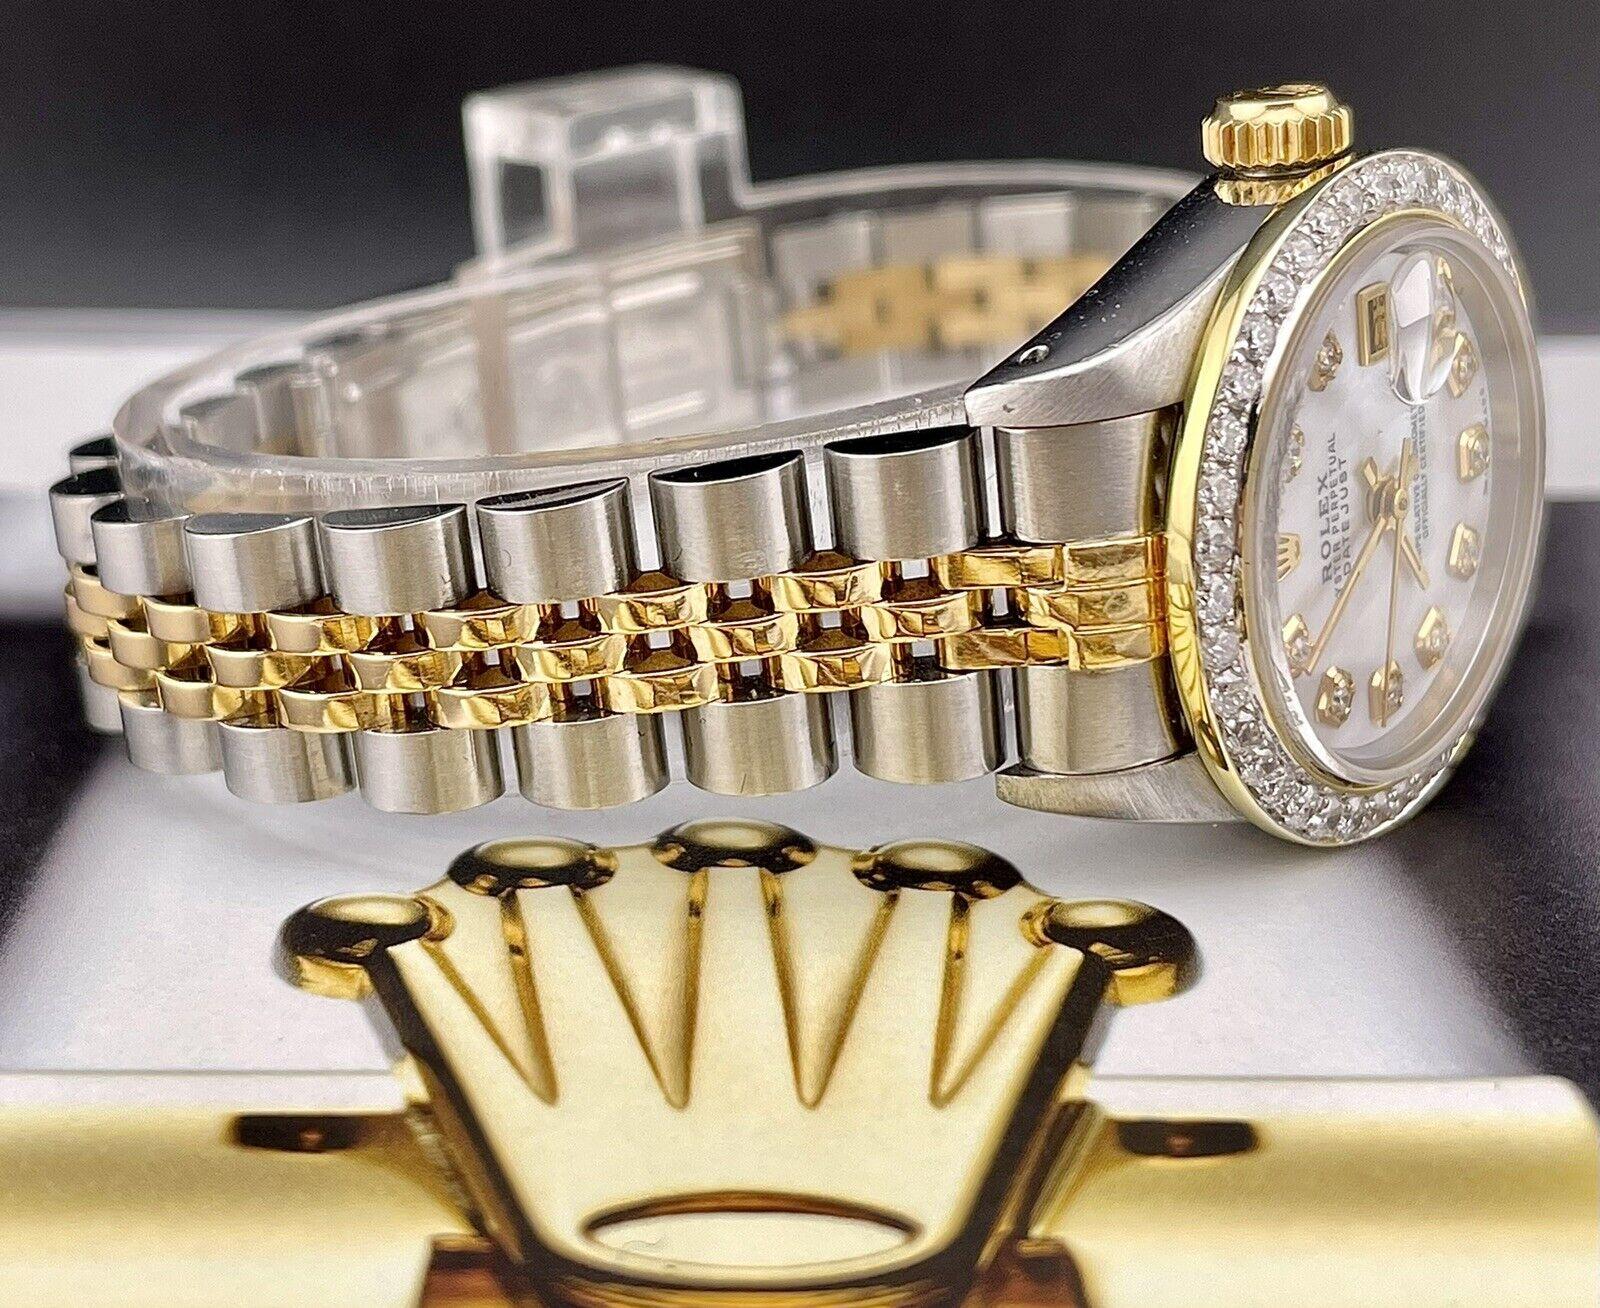 Montre Rolex Datejust 26mm. Une montre d'occasion avec boîte cadeau. La montre est 100% authentique et est accompagnée d'une carte d'authenticité. La référence de la montre est 69173 et elle est en excellent état (voir photos). Le cadran est en